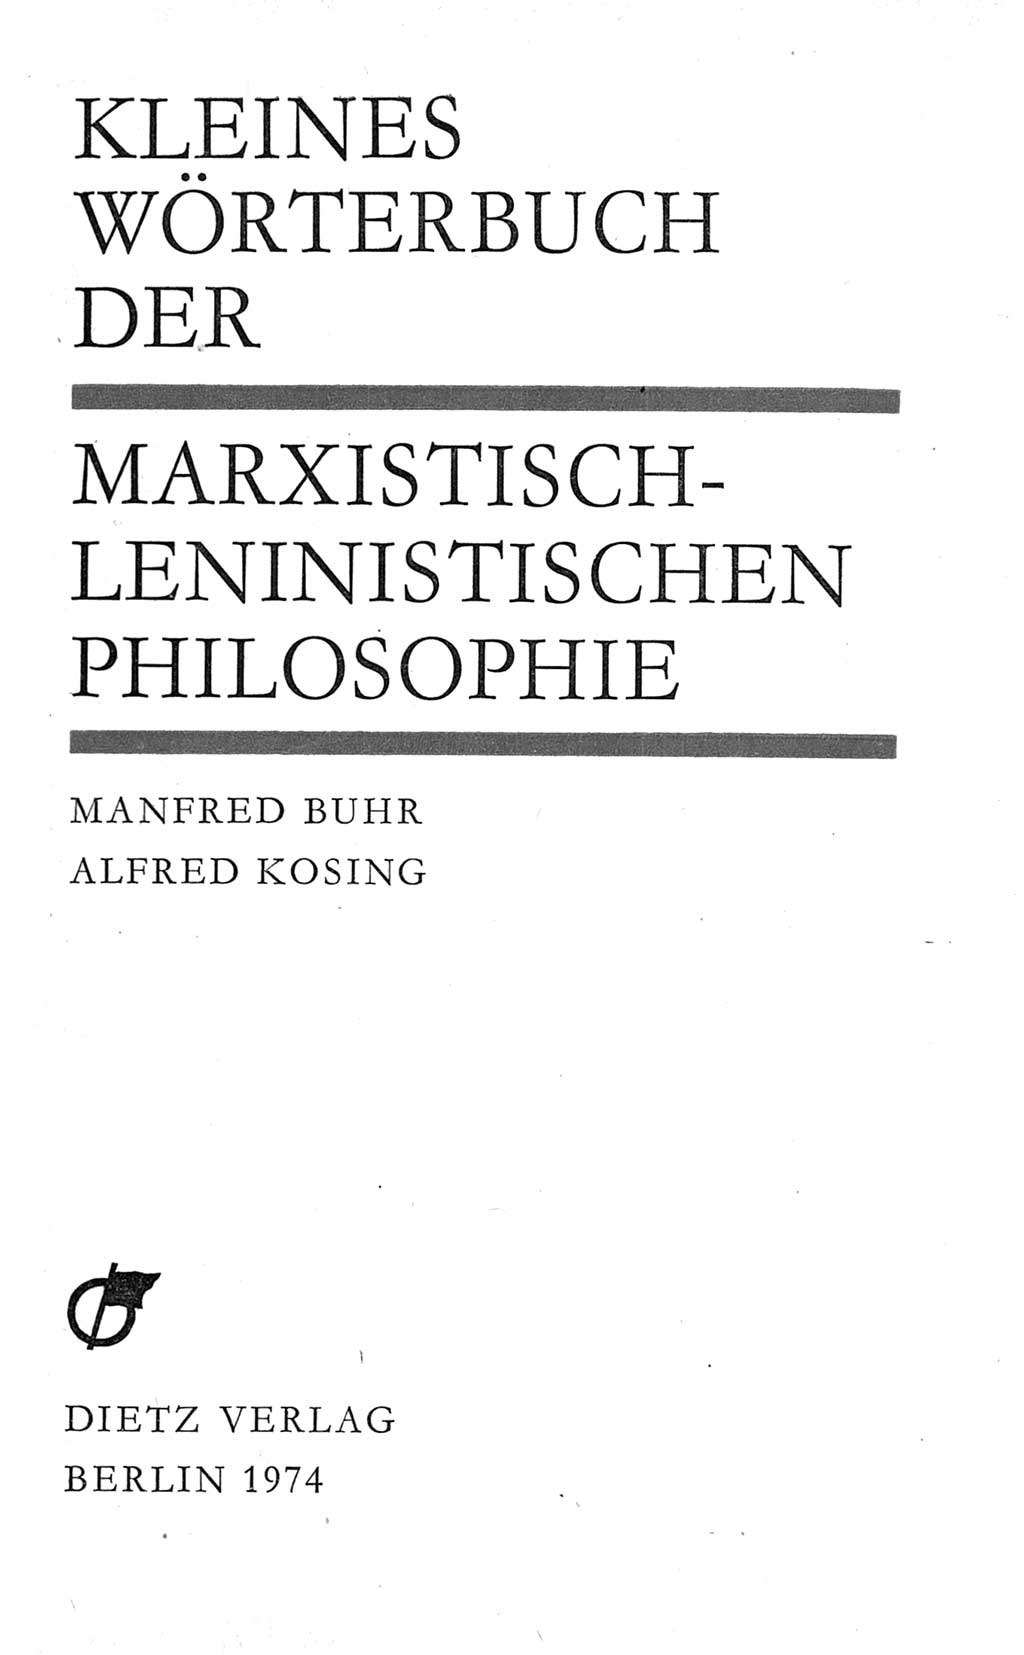 Kleines Wörterbuch der marxistisch-leninistischen Philosophie [Deutsche Demokratische Republik (DDR)] 1974, Seite 3 (Kl. Wb. ML Phil. DDR 1974, S. 3)